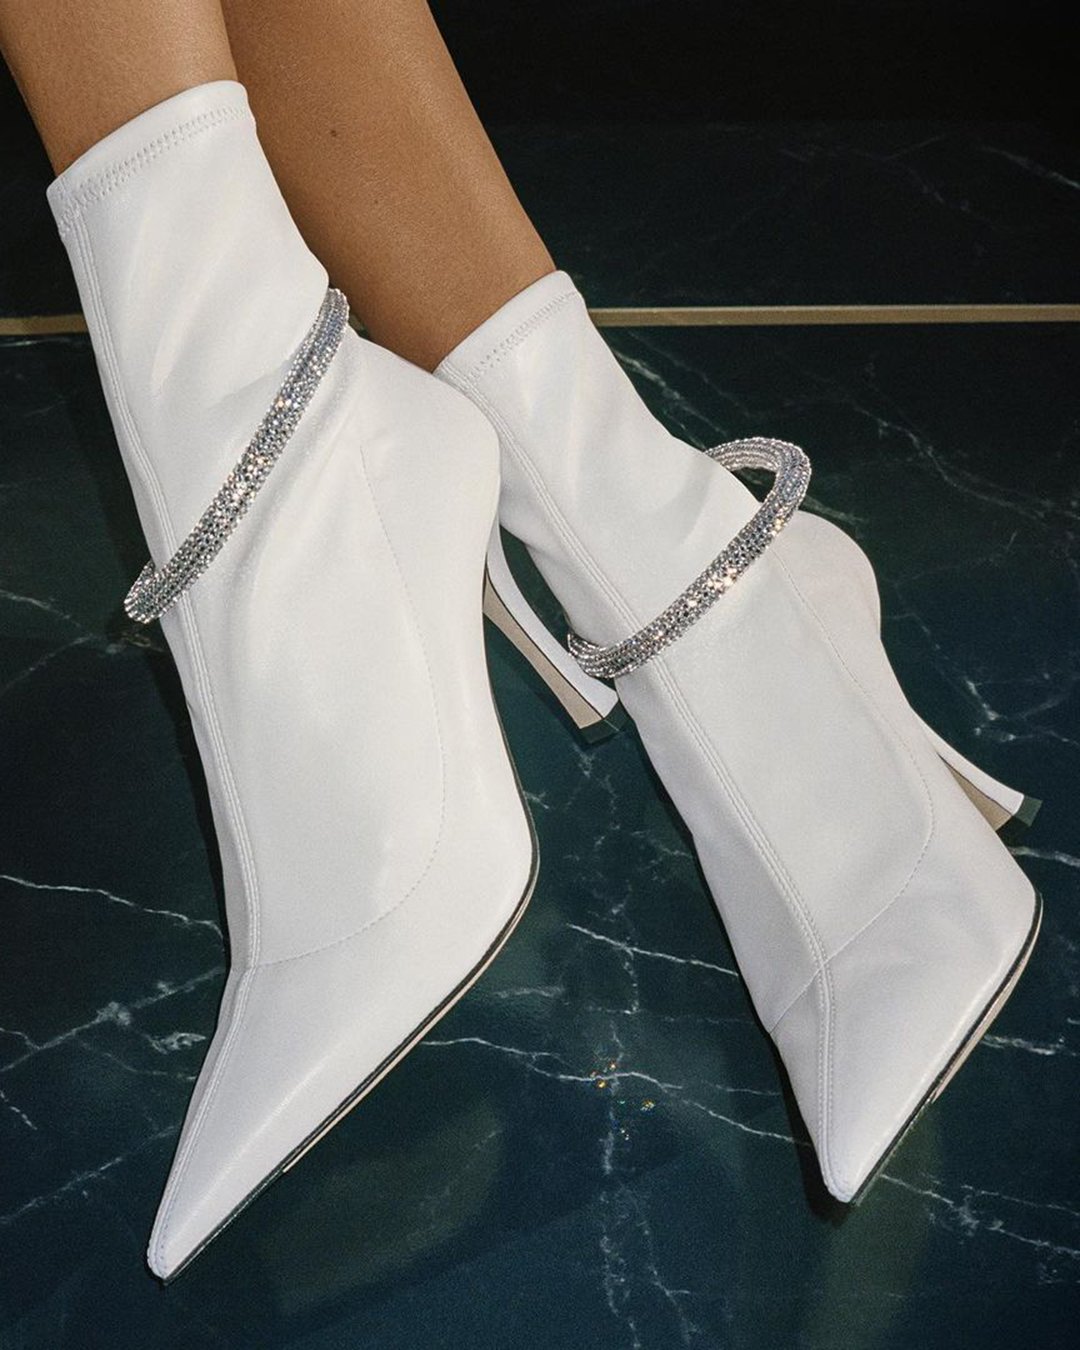 comfortable wedding shoes simple with heels stylish jimmychoo